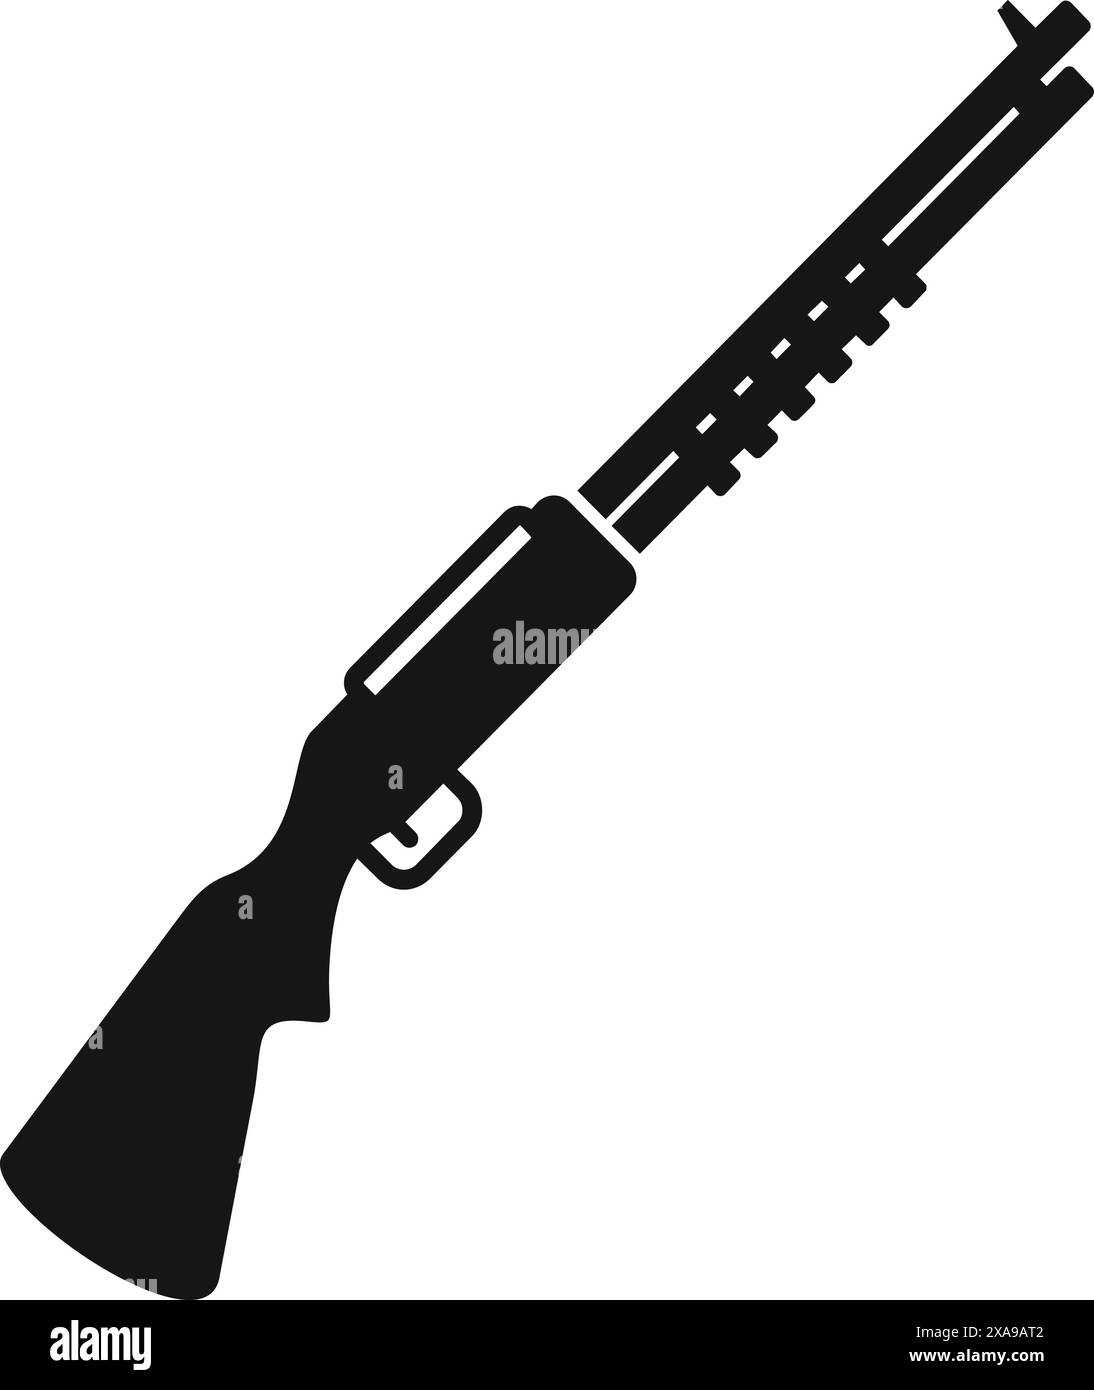 Einfaches Symbol mit einem Jagdgewehr, das die Aufmerksamkeit auf die Macht von Schusswaffen lenkt Stock Vektor